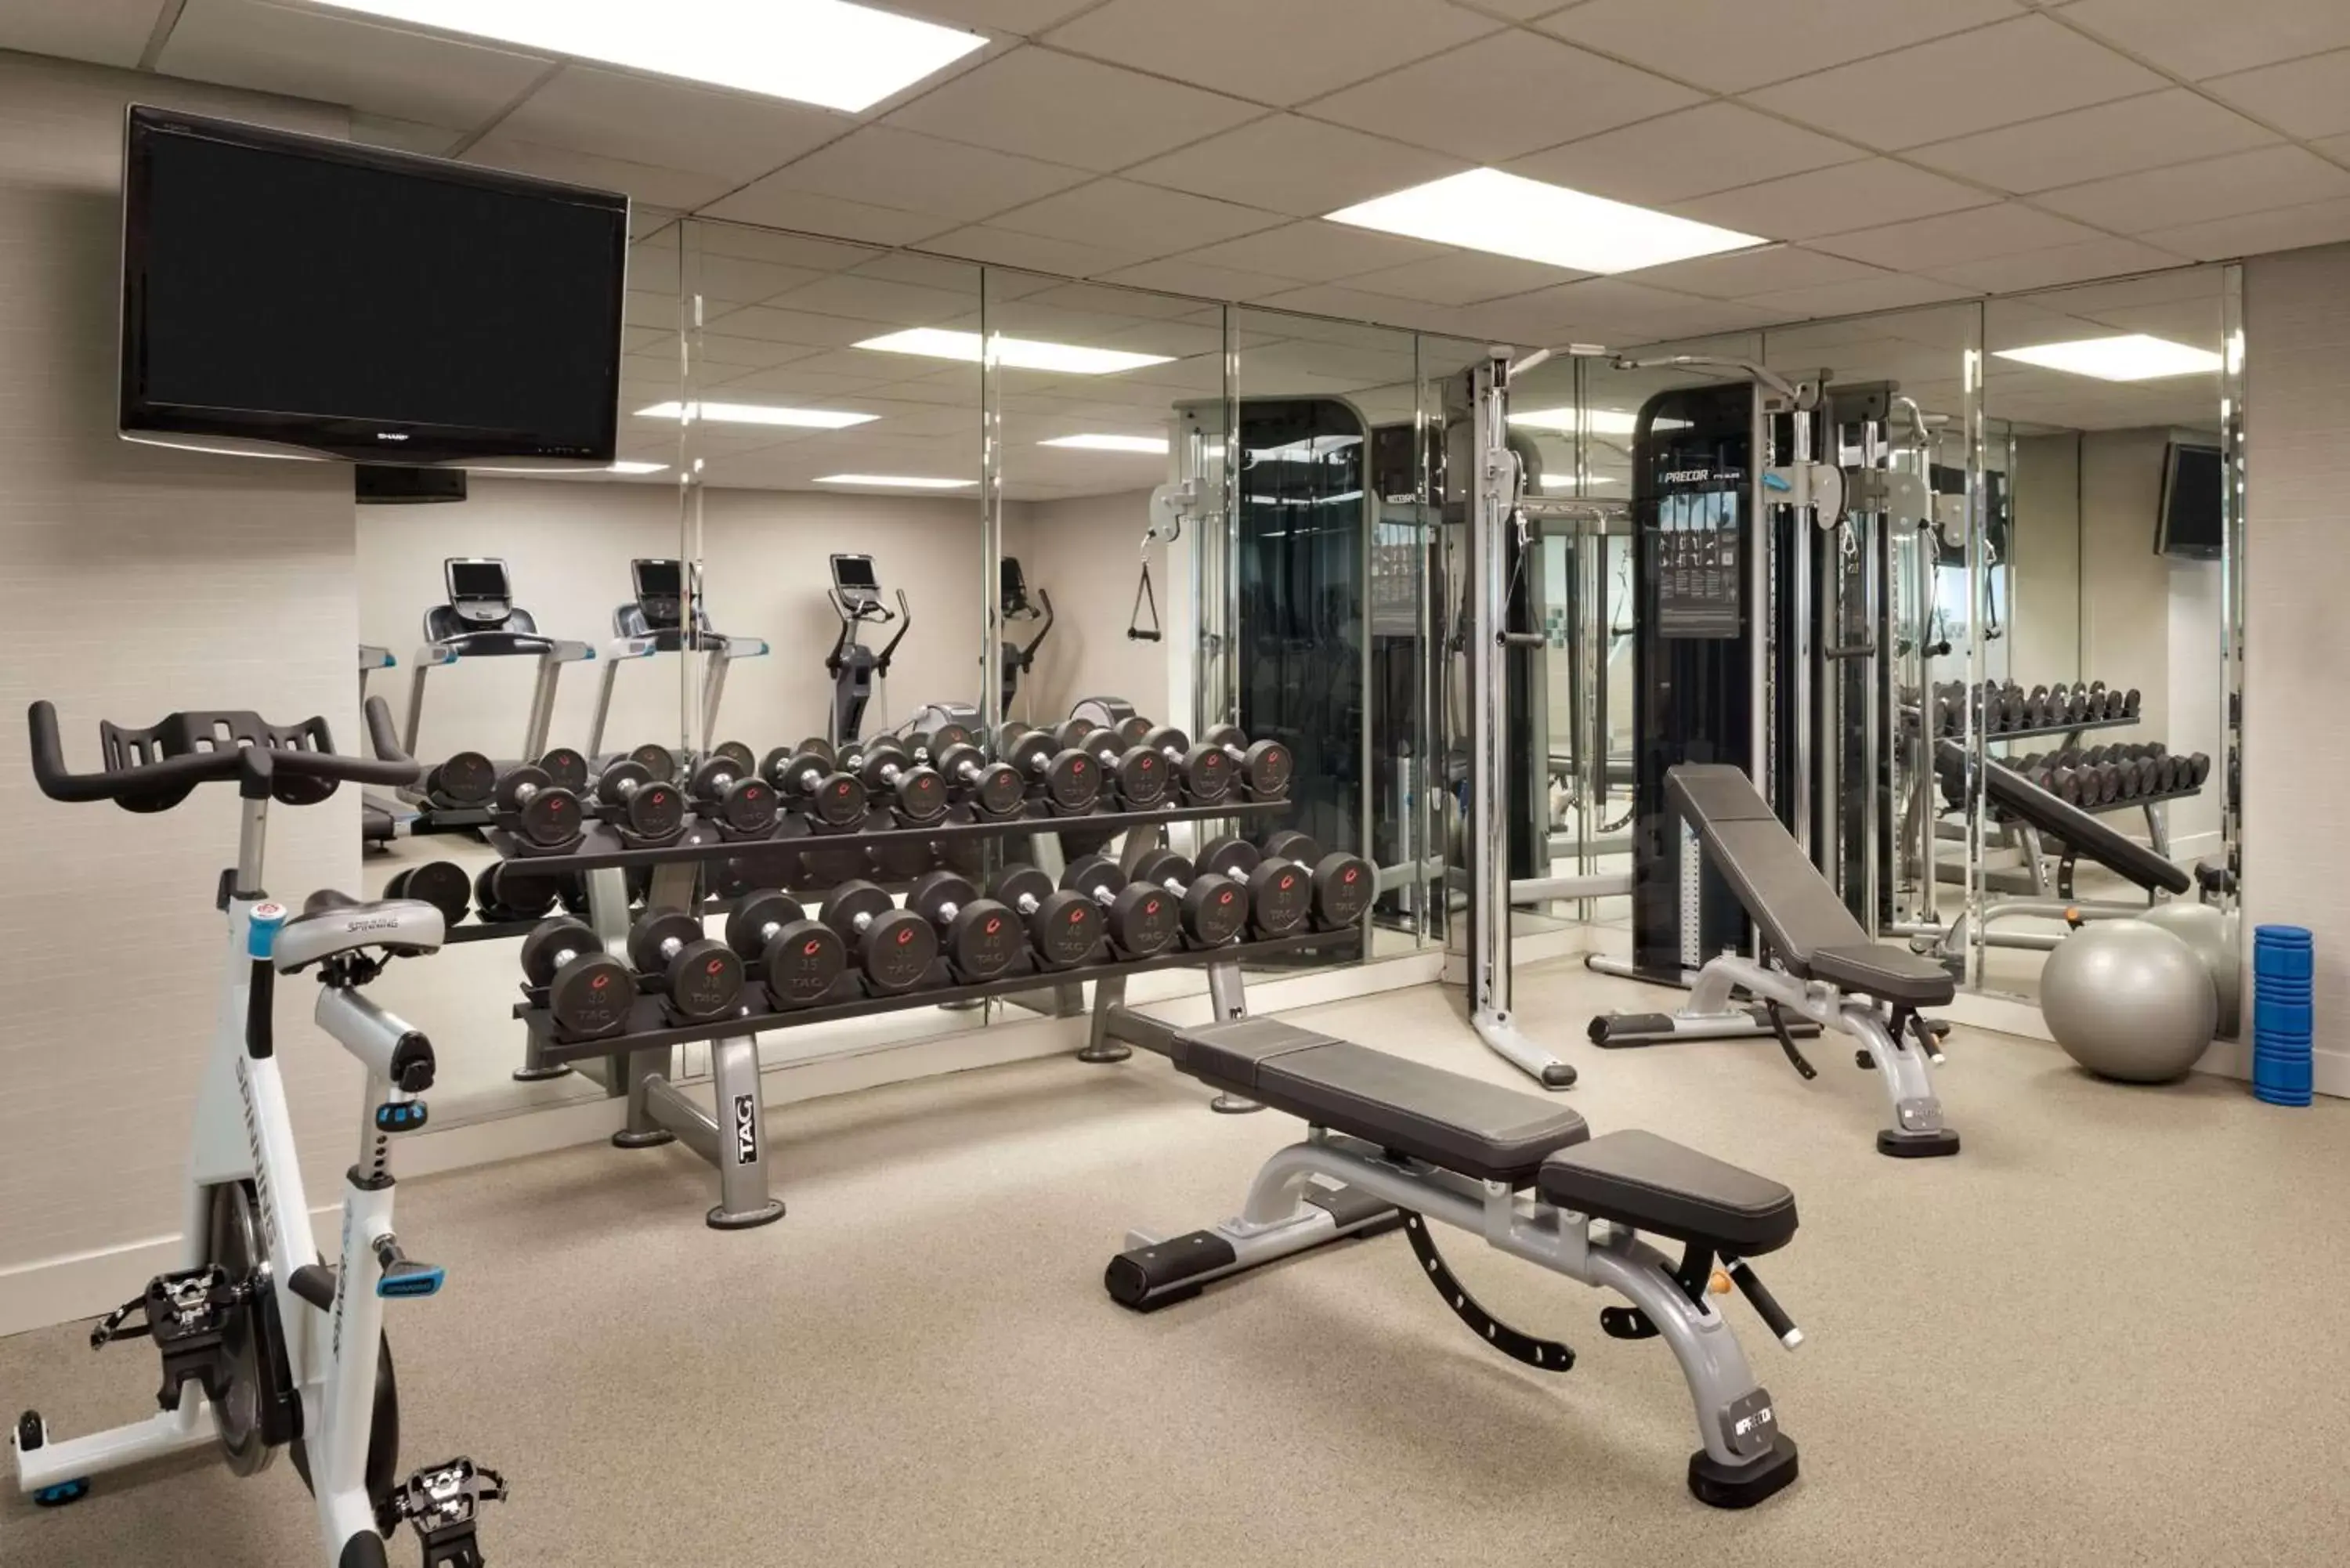 Fitness centre/facilities, Fitness Center/Facilities in Hyatt Regency Schaumburg Chicago